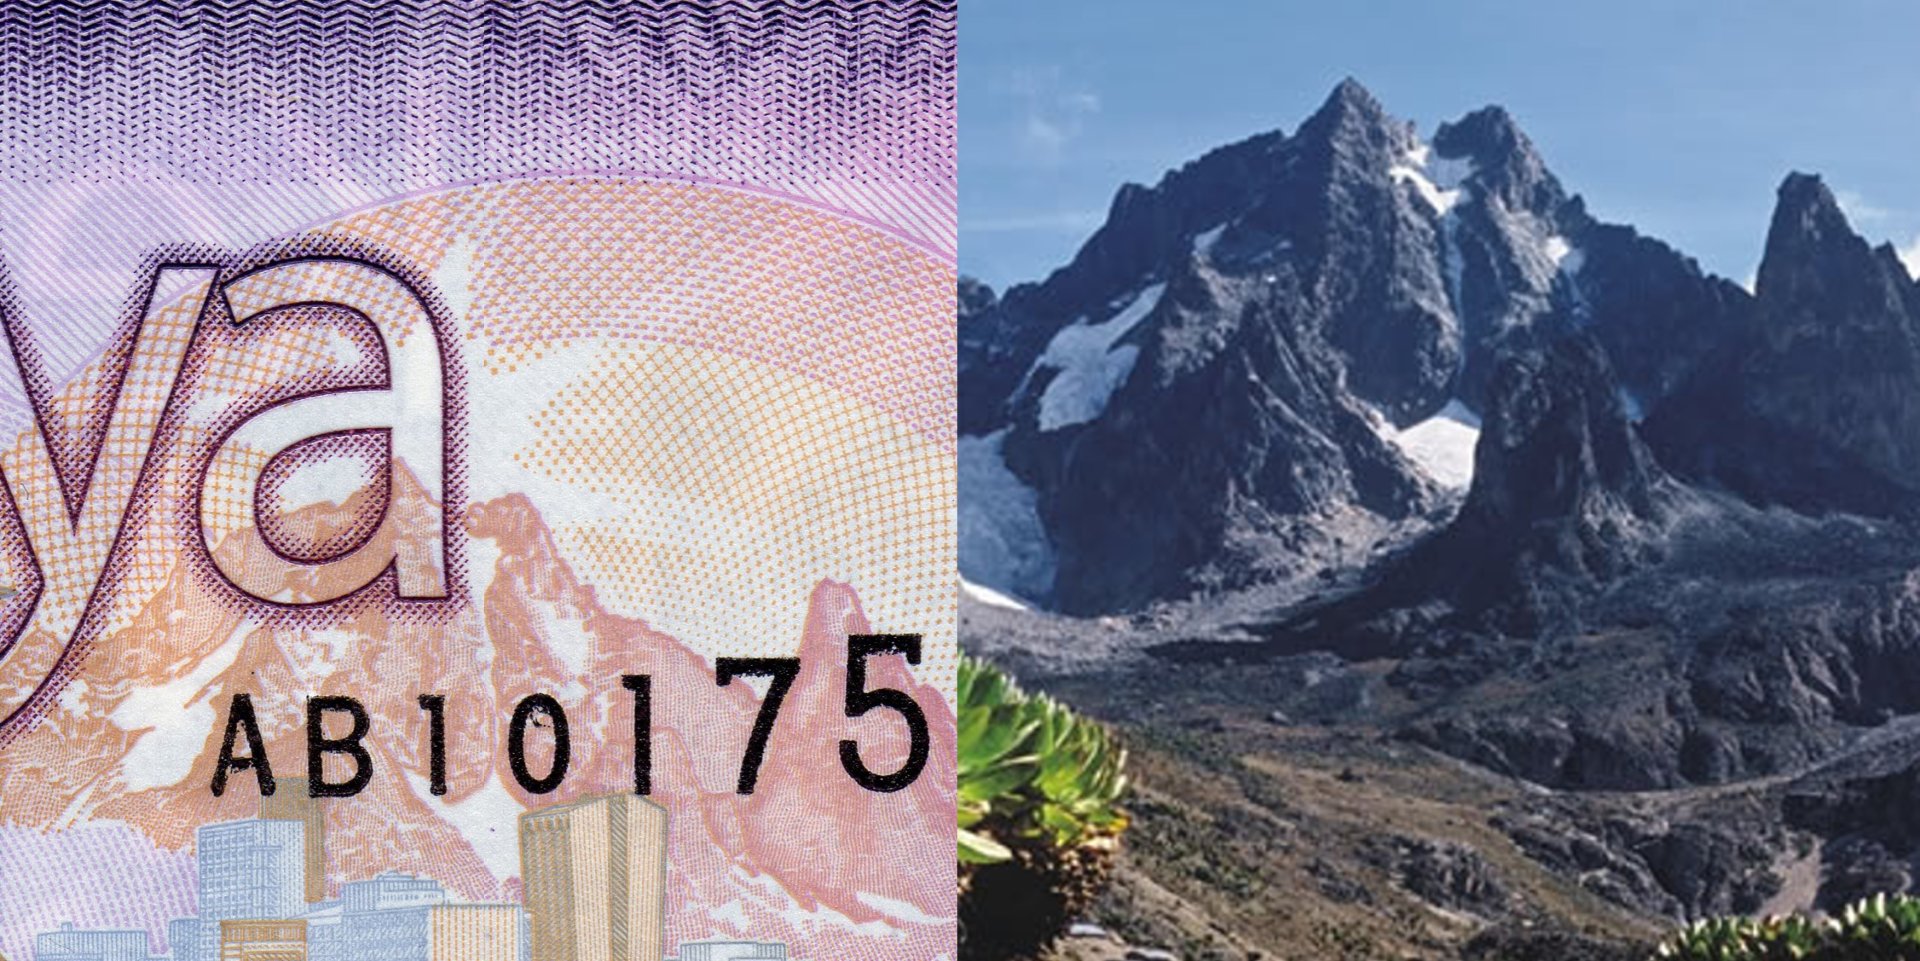 1 A) Výřez z bankovky nové emise 2019 zachycující vrchol hory Mount Kenya.  B) Upravené fotografie s podobným pohledem na vrchol hory. Převzato z: http://www.primadonasafaris.co.ke/mount-kenya-trekking/